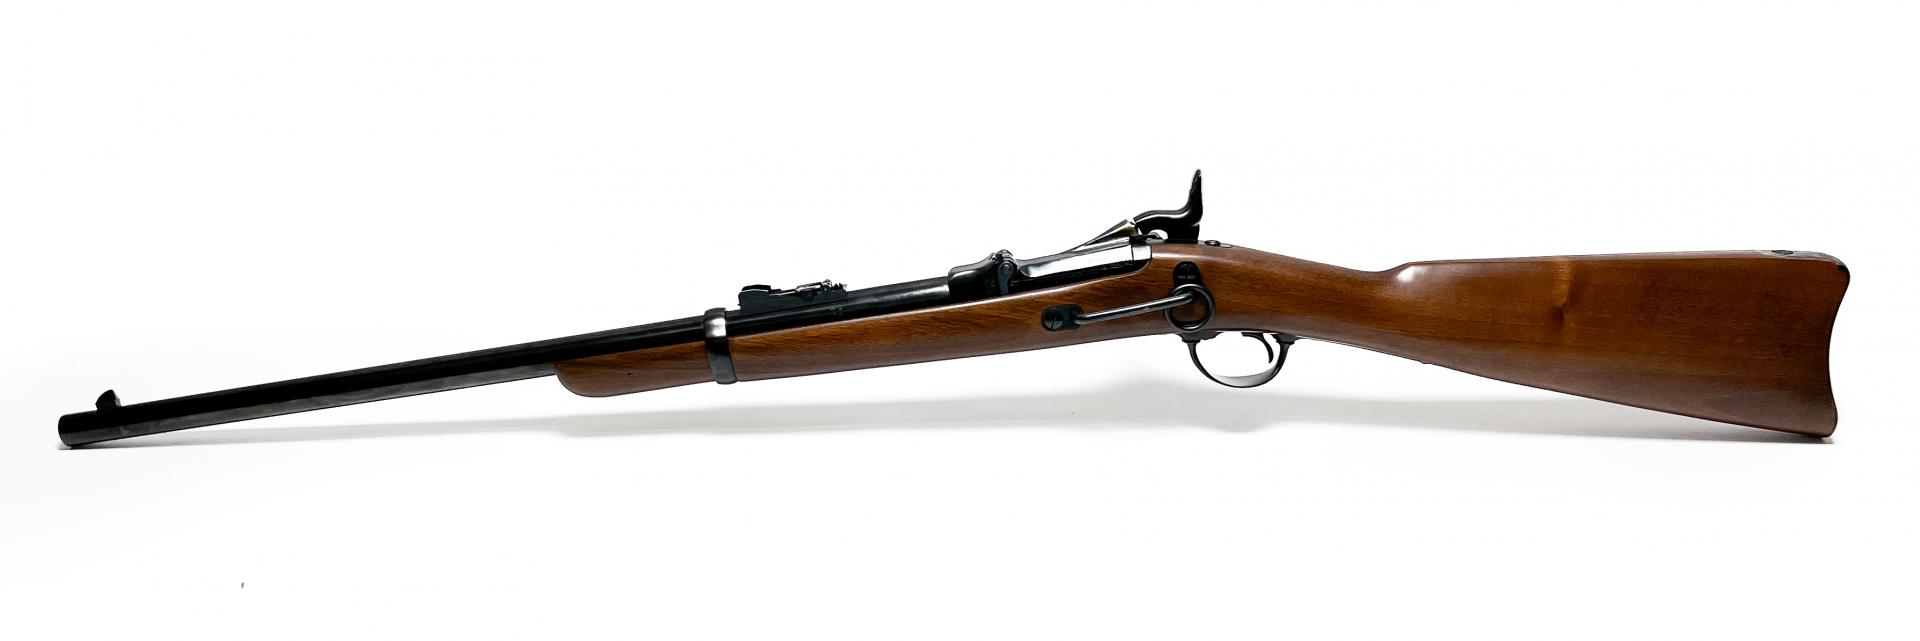 CONSIGNED Uberti US Springfield Trapdoor Carbine 45-70 TRAPDOOR 22  FUBE103400 Long gun - Arnzen Arms